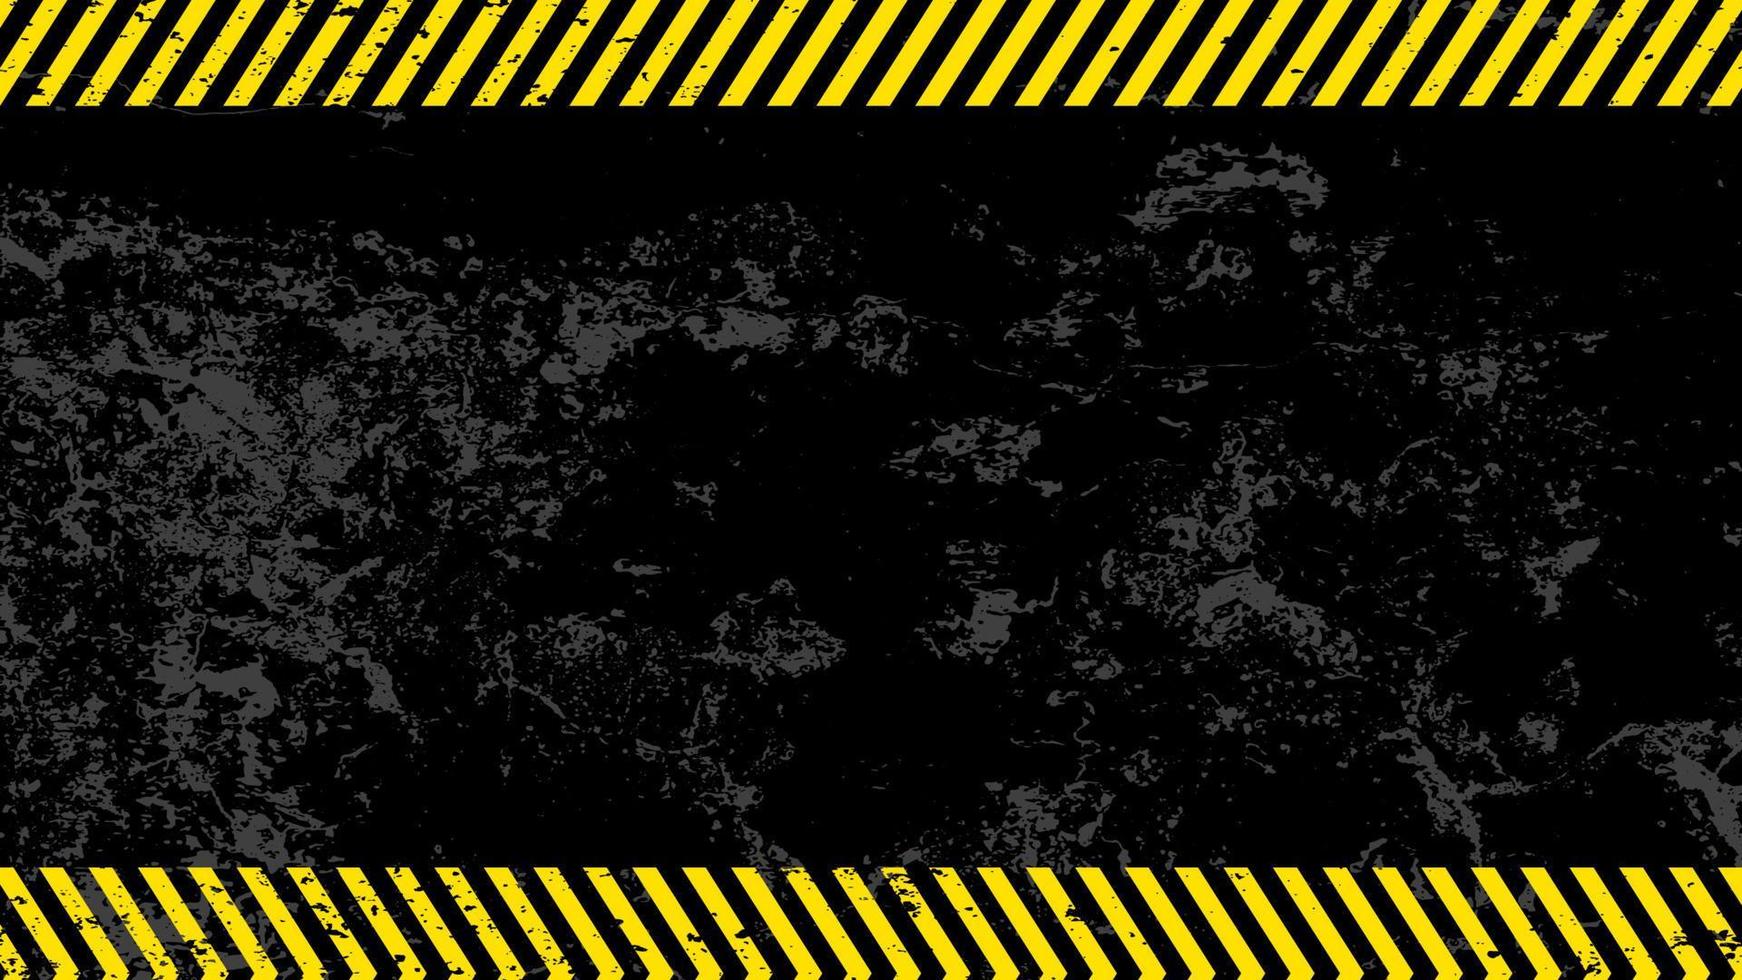 varning randig rektangulär bakgrund, gula och svarta ränder på diagonalen, en varning att vara försiktig. en grungy och sliten hazard stripes textur. vektor av potentiell fara mall tecken